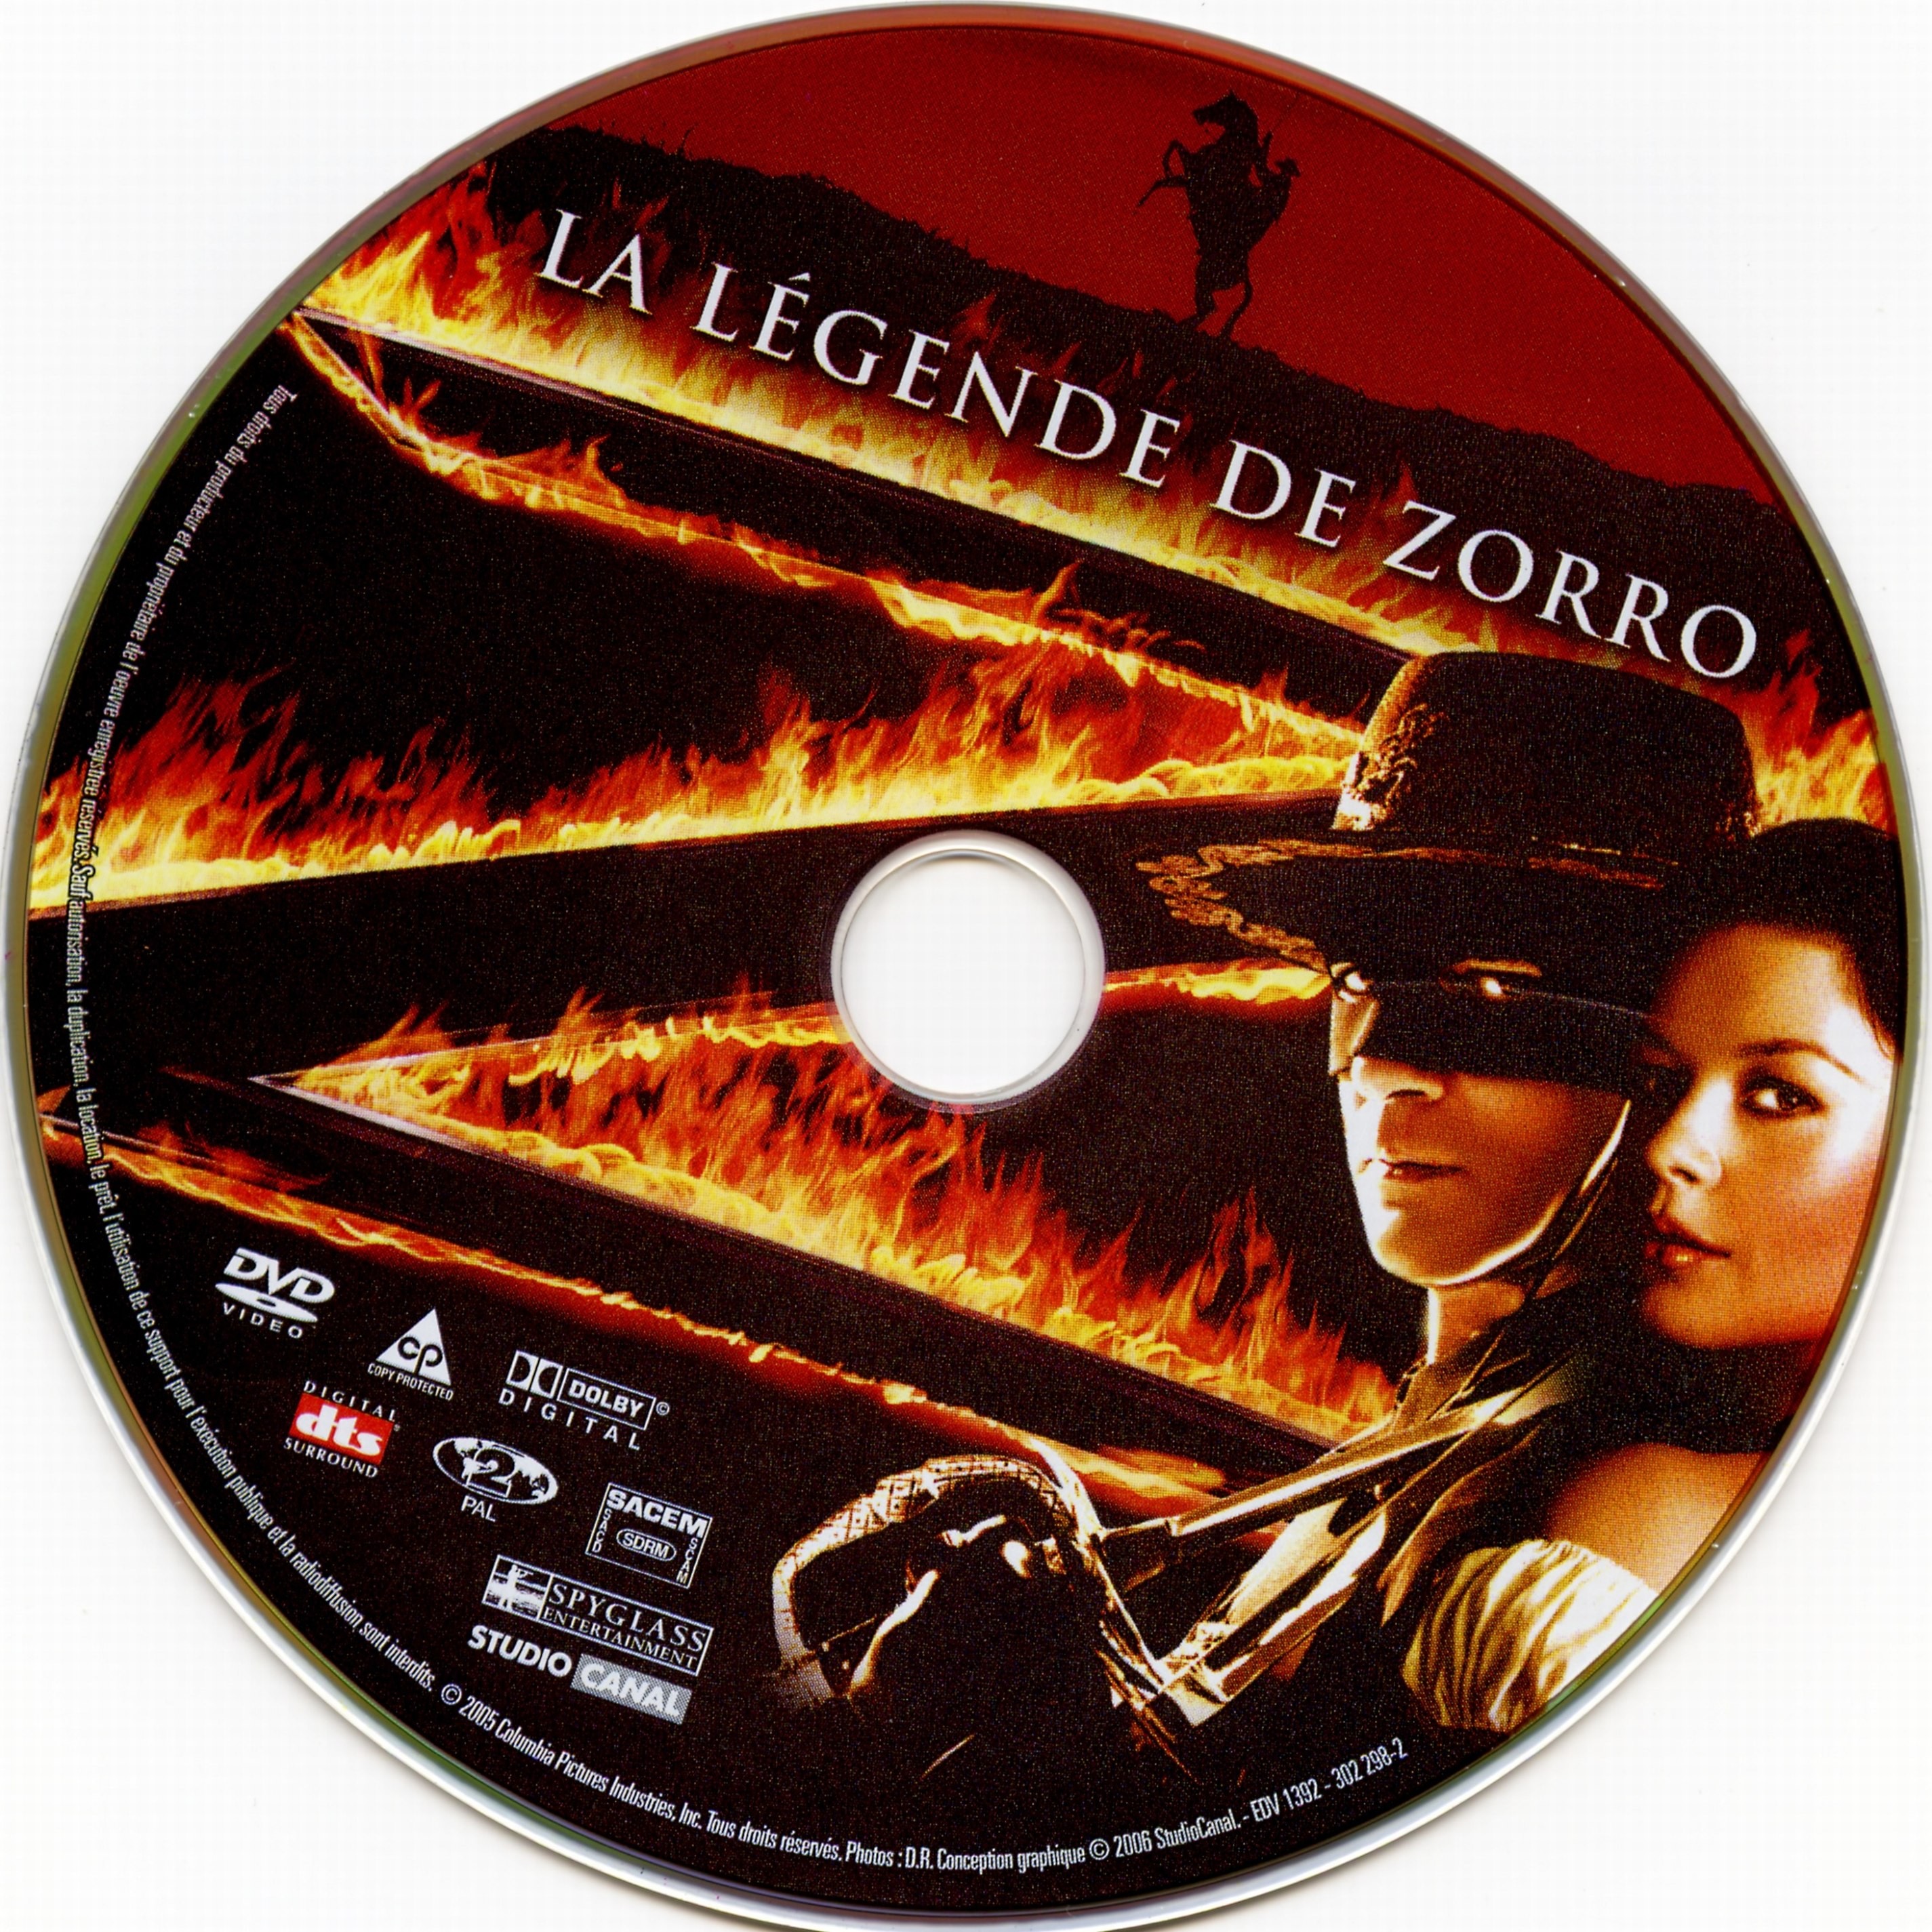 La lgende de Zorro